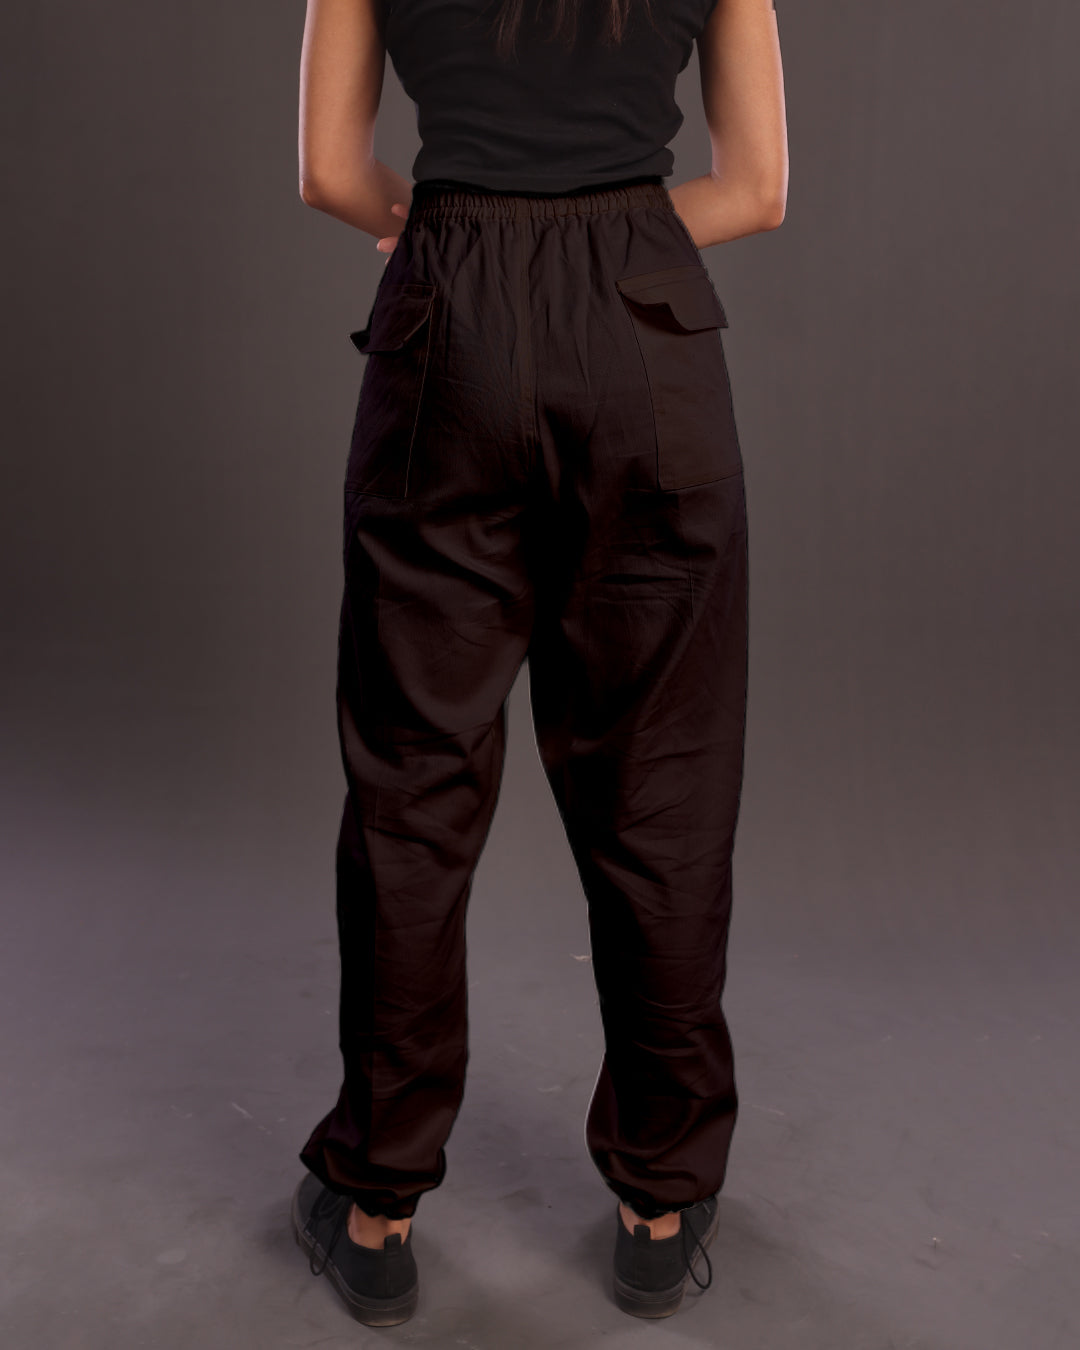 Get Funky in Black: Ladies' Adjustable Cargo Pants